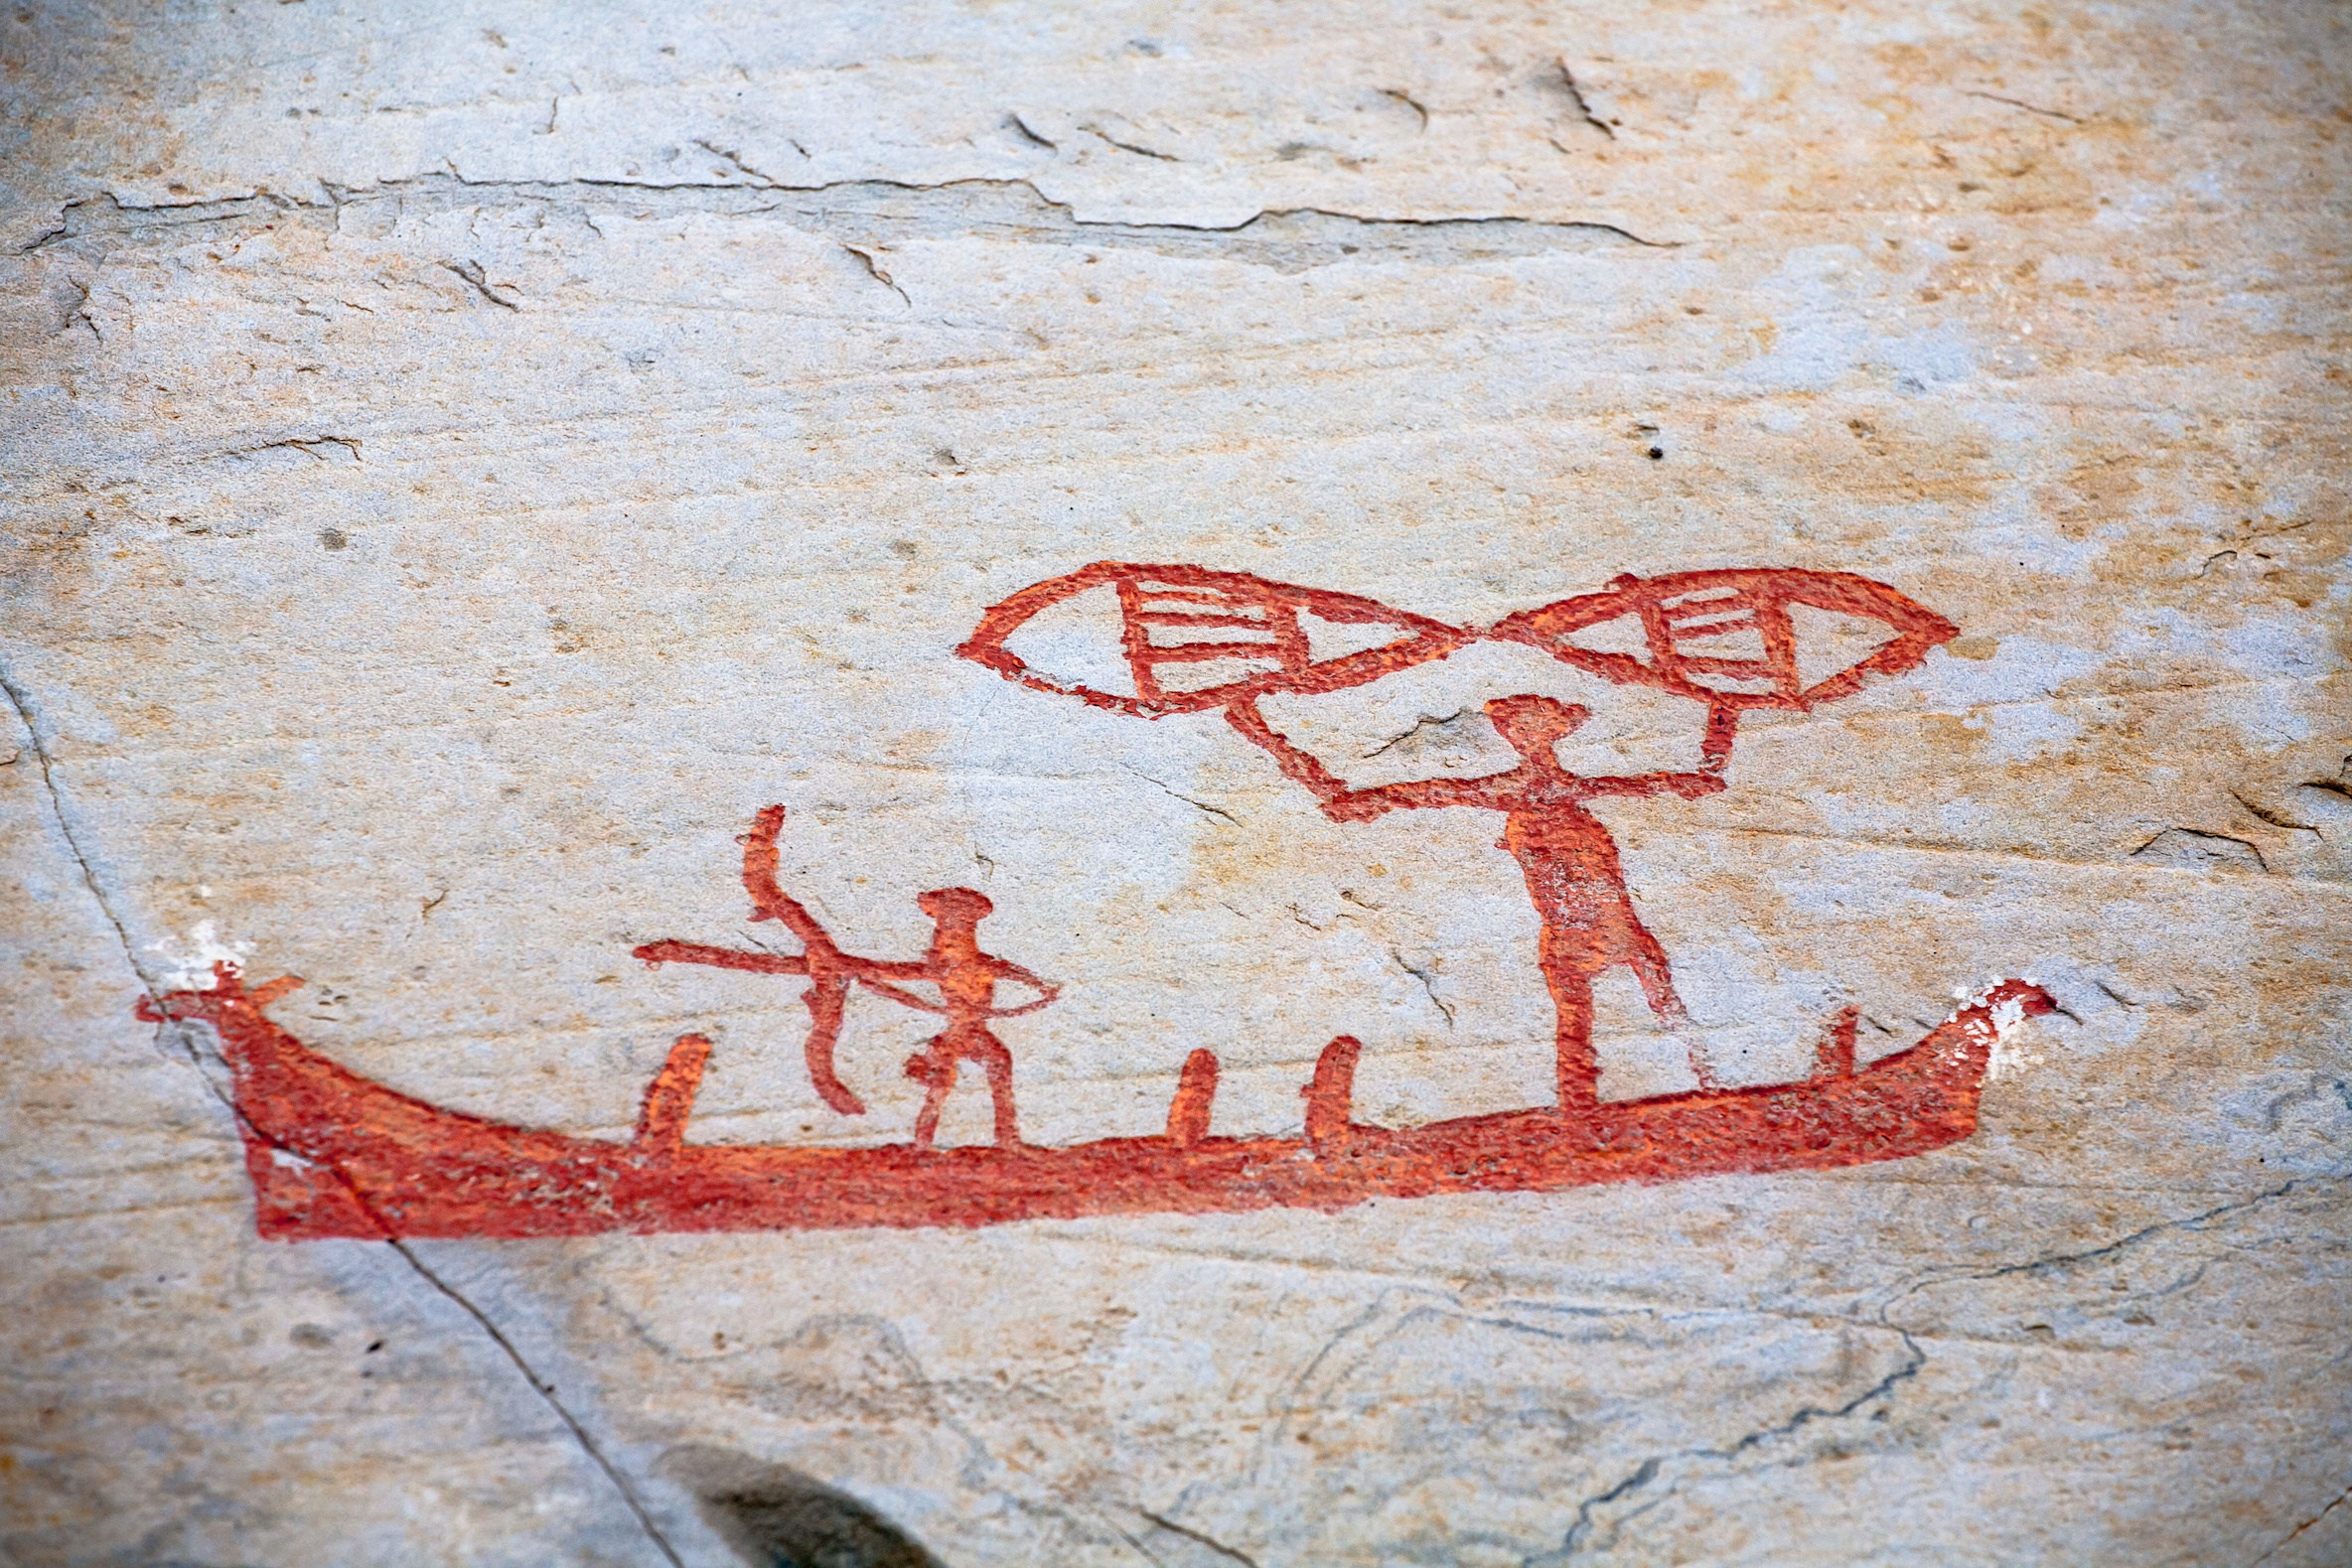 Les pétroglyphes d'Alta en Norvège révèlent des gravures d'embarcations. Elles ont été réalisées il y a 6 000 ans, mais la navigation serait bien plus ancienne que cela. © Oleg Kozlov, Adobe Stock